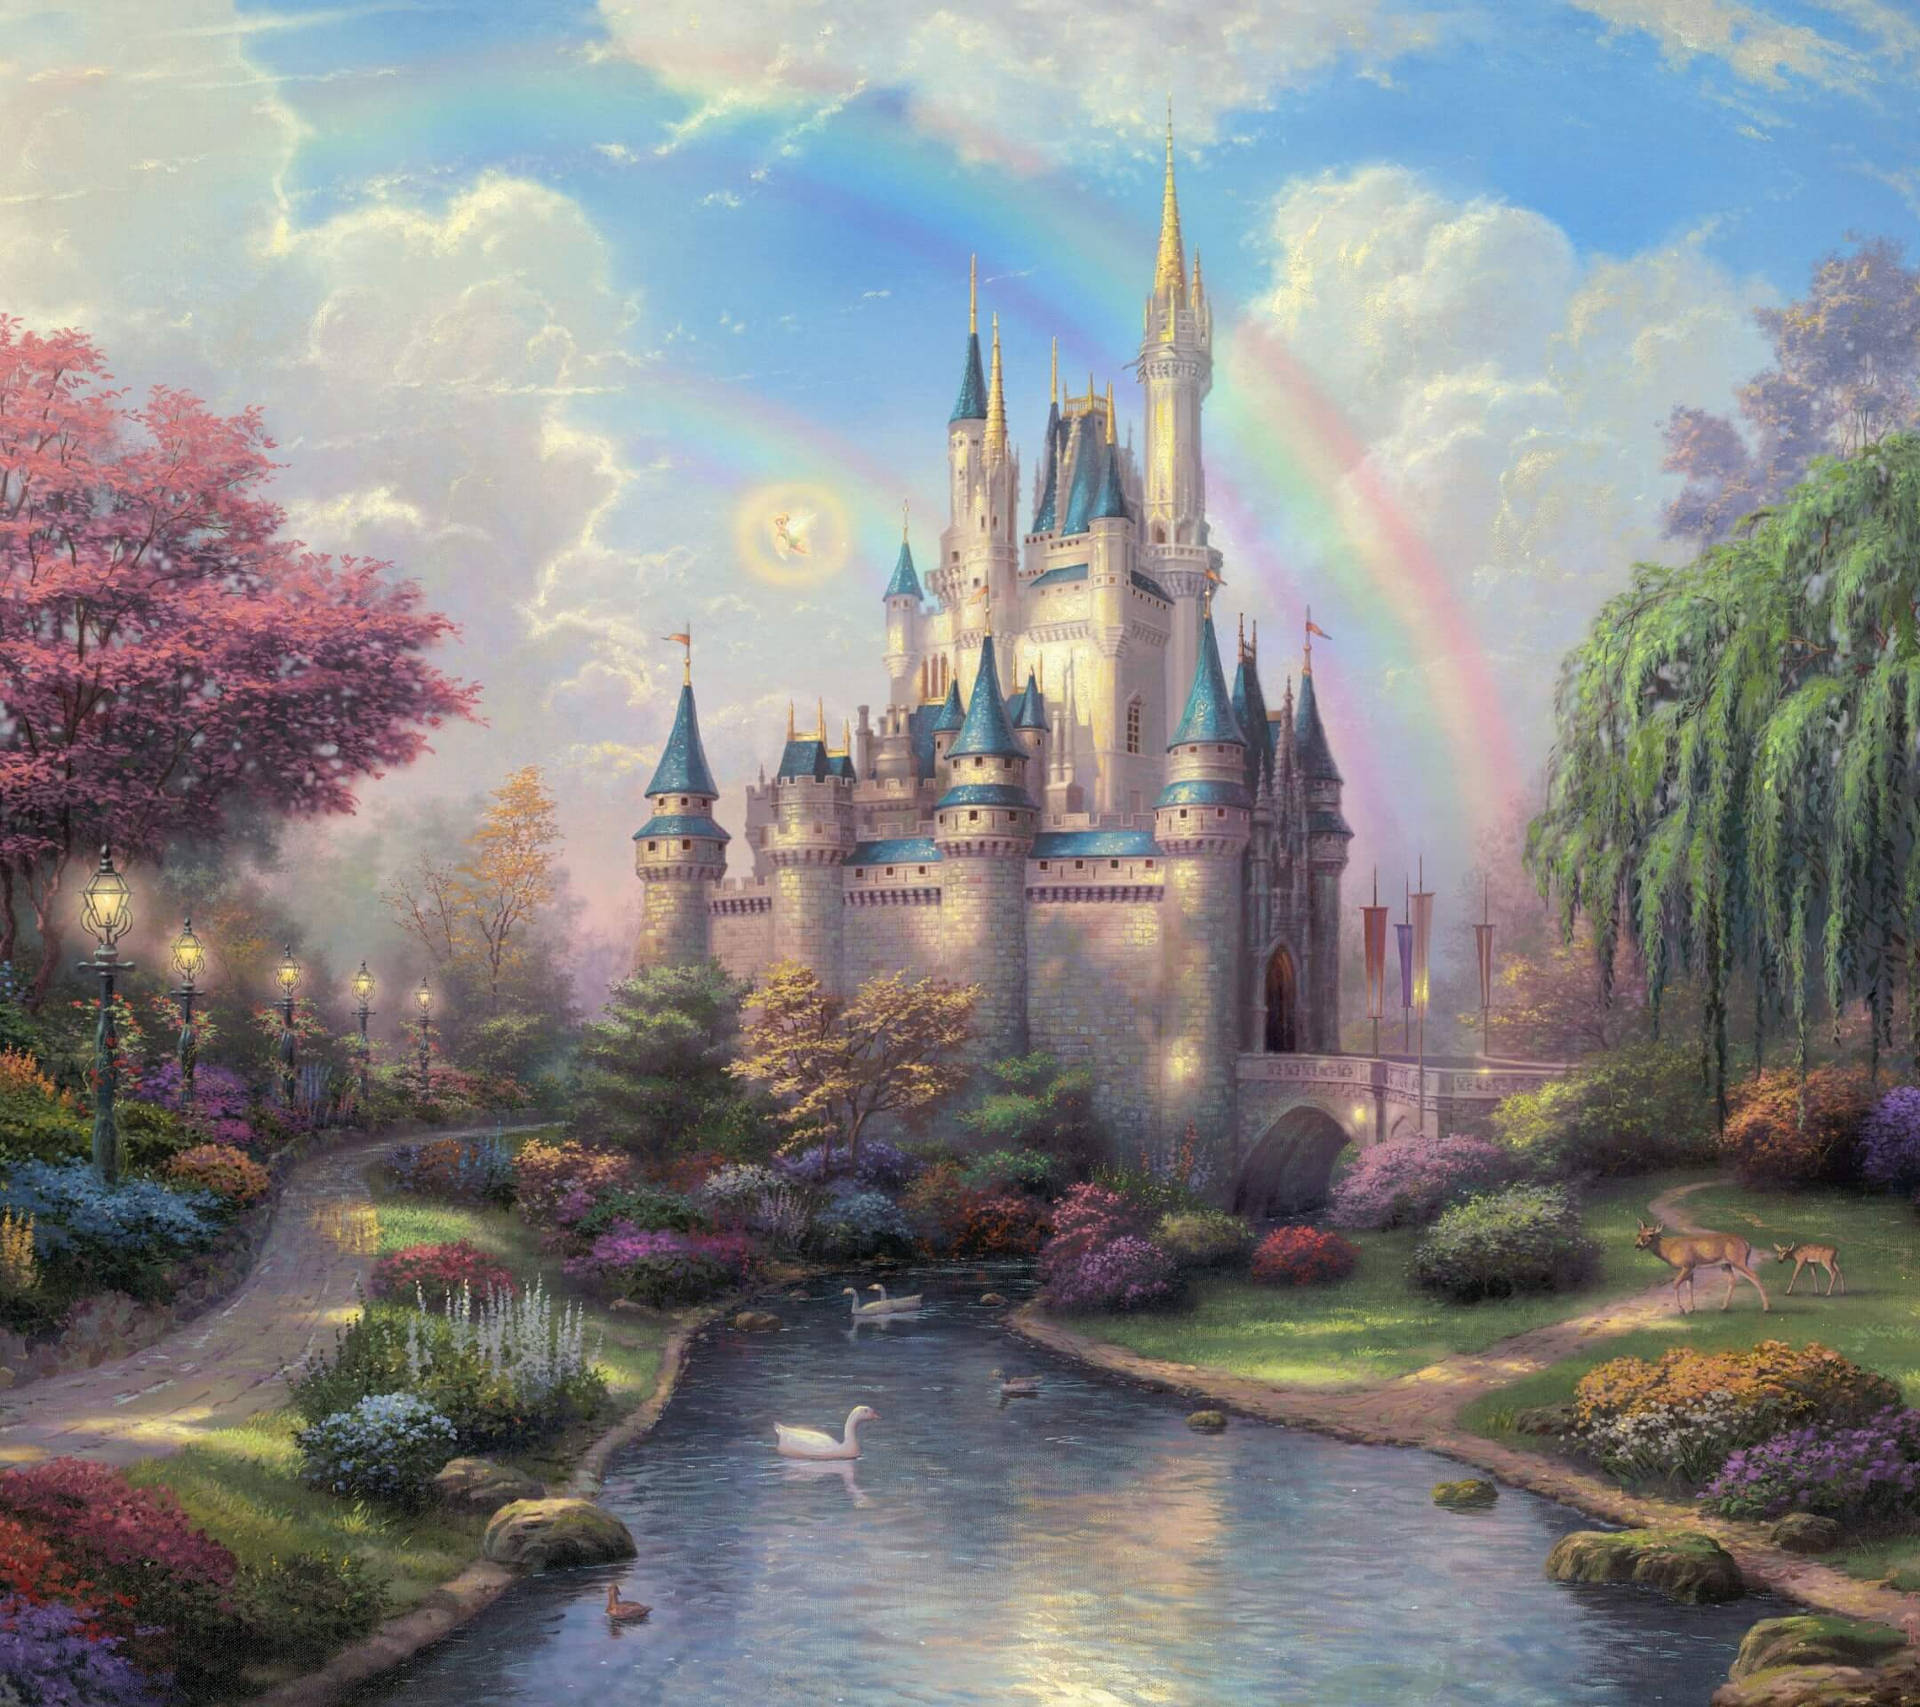 Magical Castle Art Image